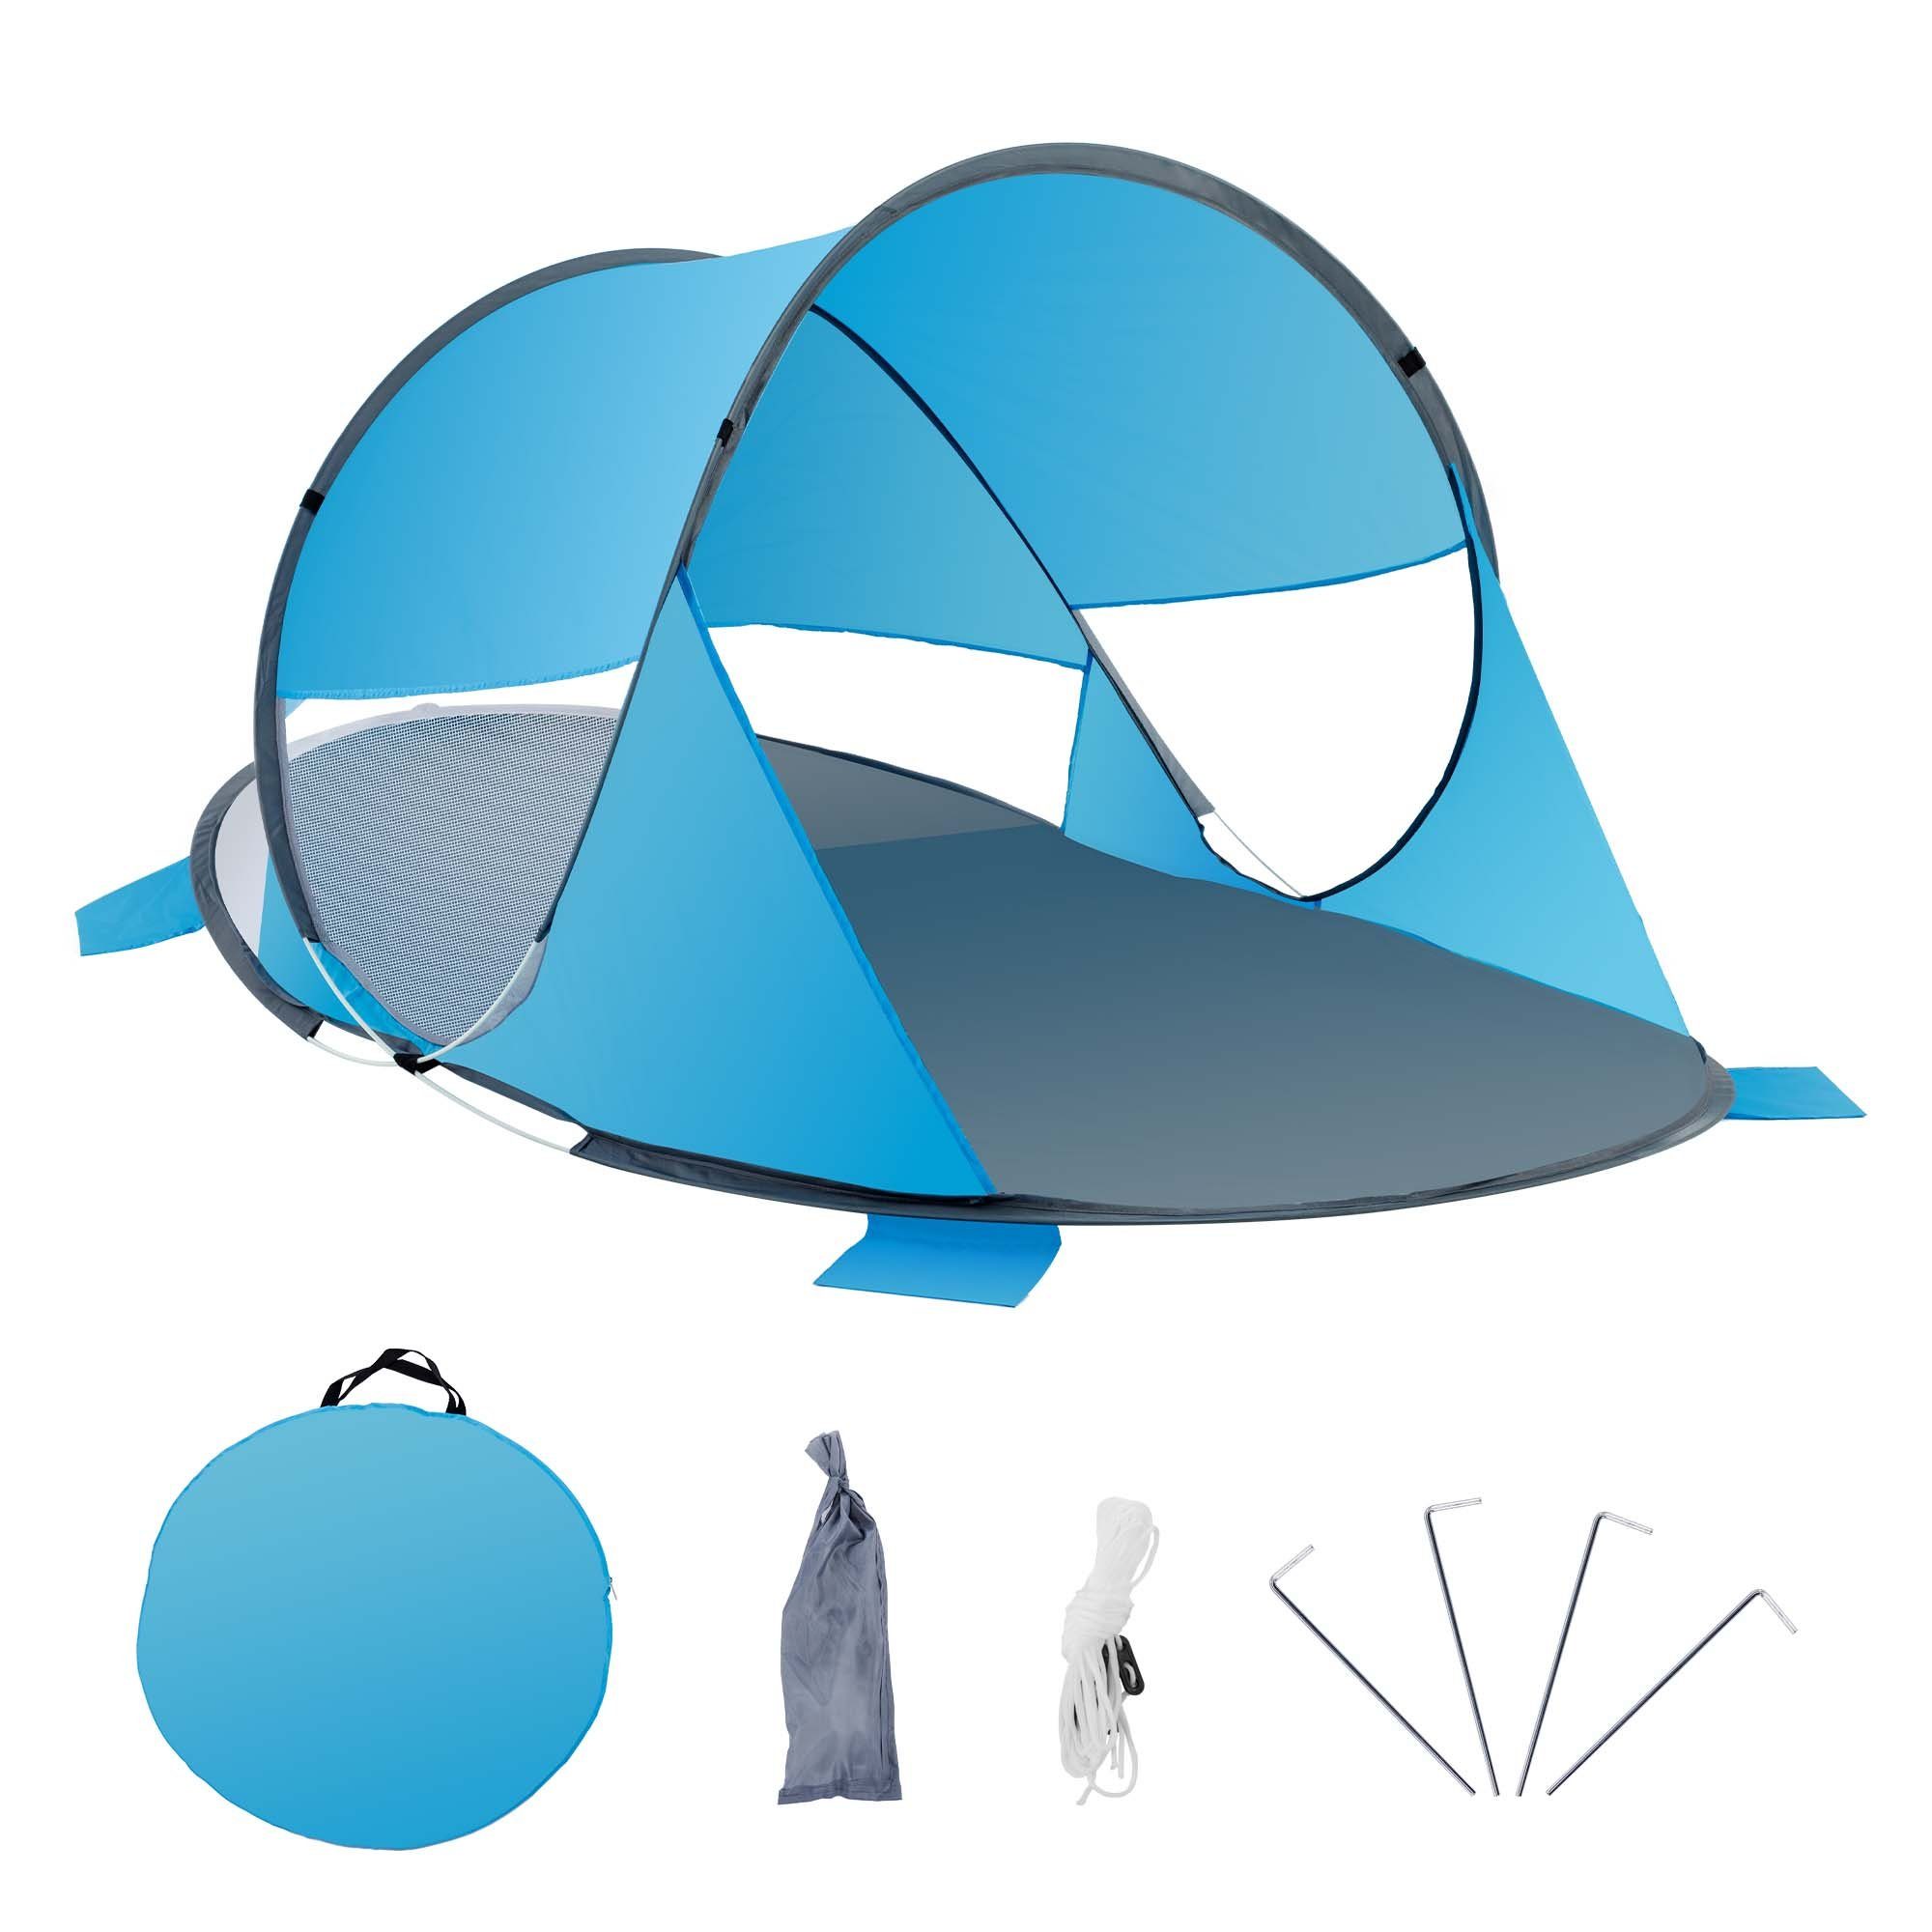 Duhome Strandmuschel, Strandmuschel Pop Up Strandzelt Wetter- und Sichtschutz Polyester Zelt Grau+Blau